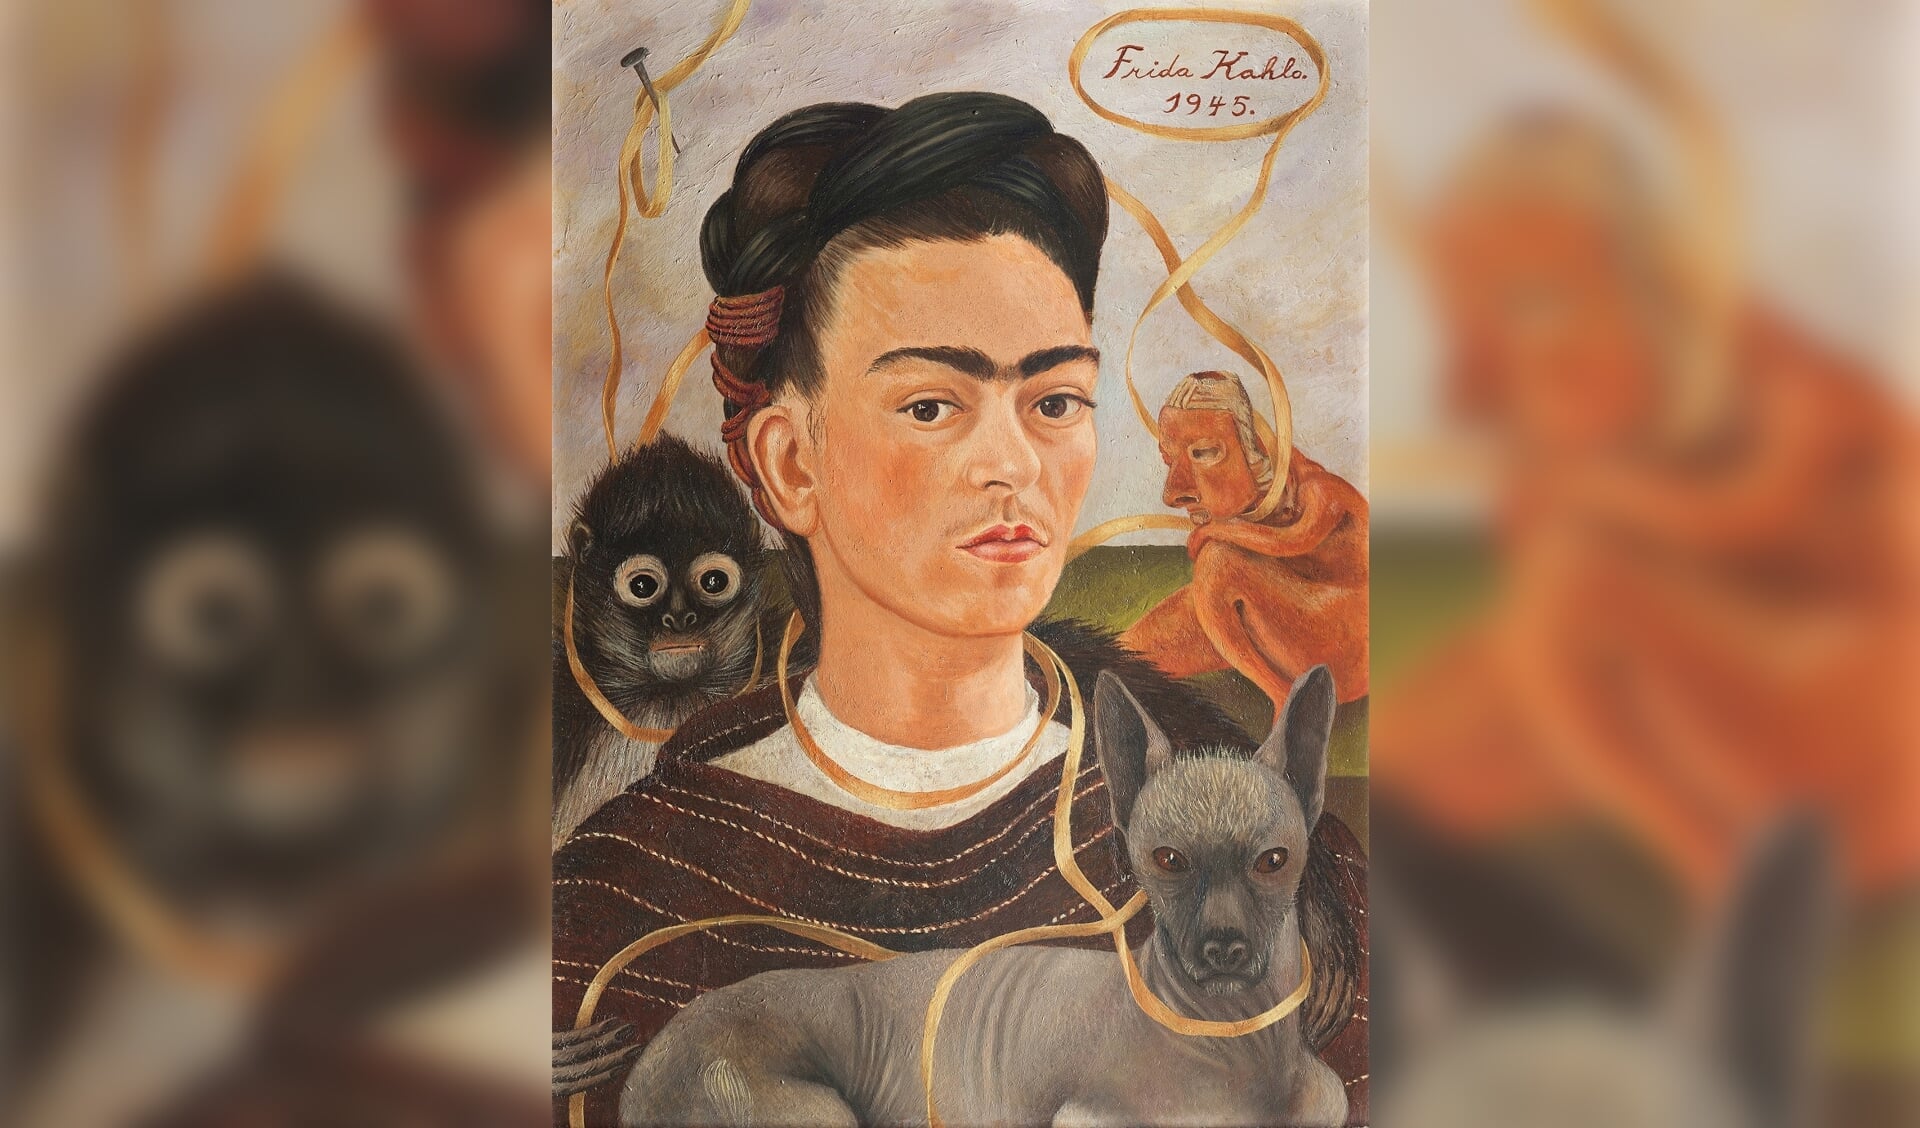 Het bekende 'Zelfportret met aapje' van Frida Kahlo.